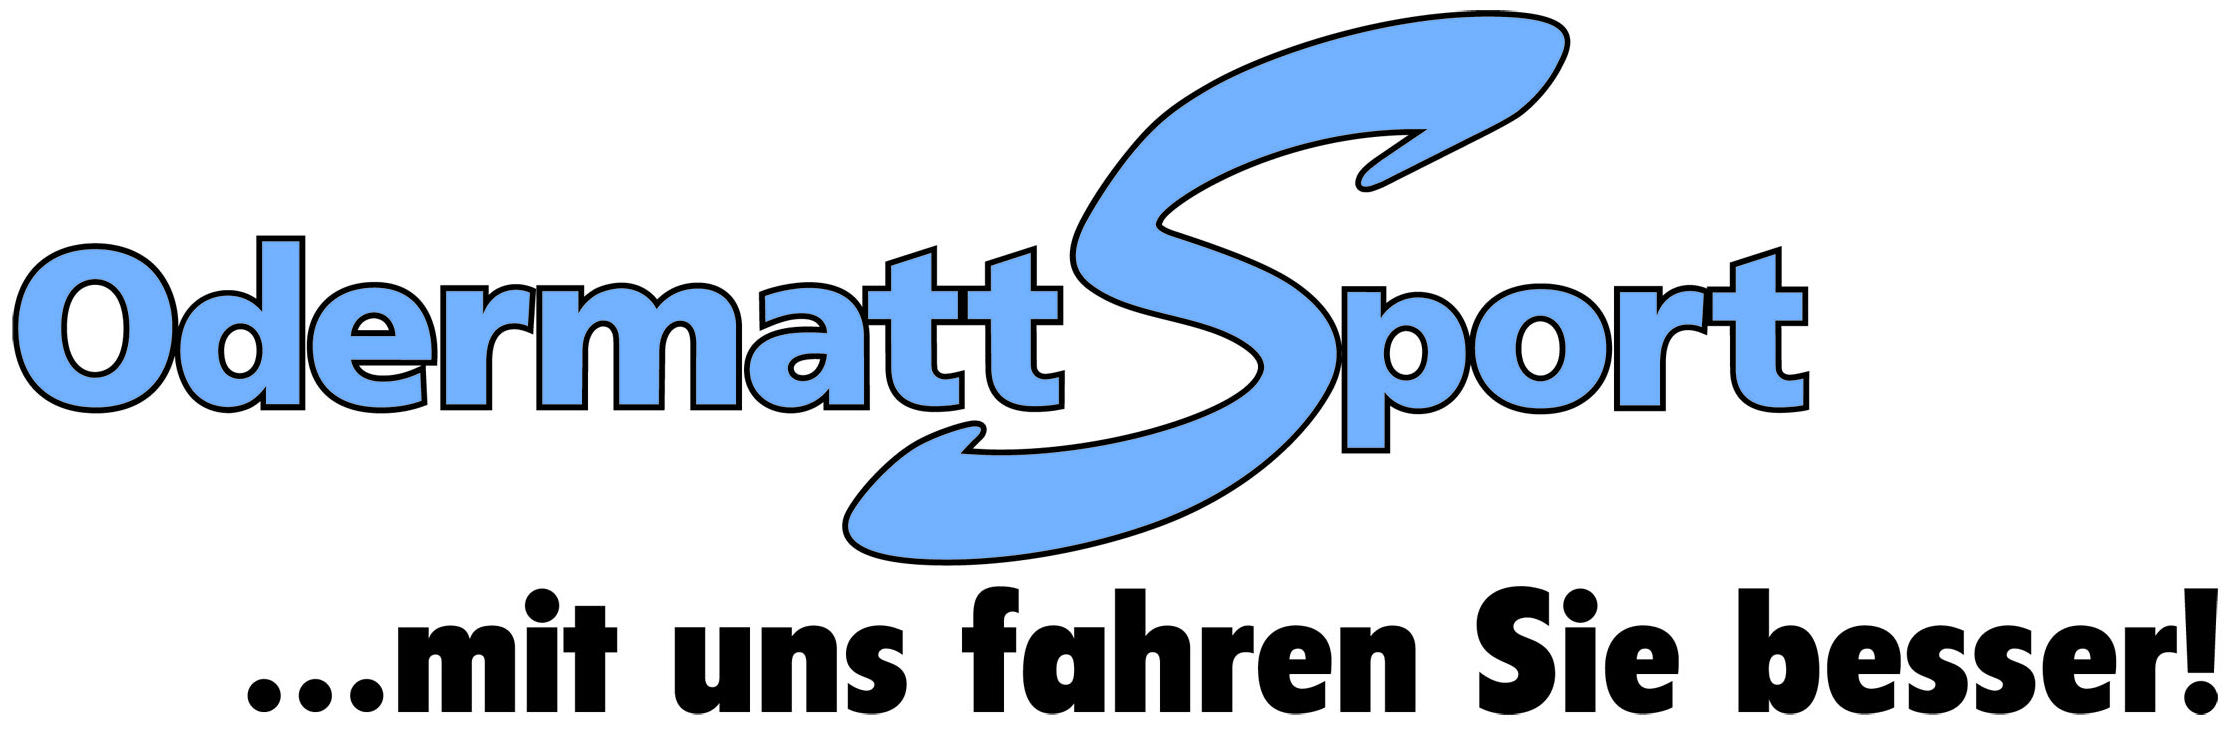 http://www.odermatt-sport.ch/